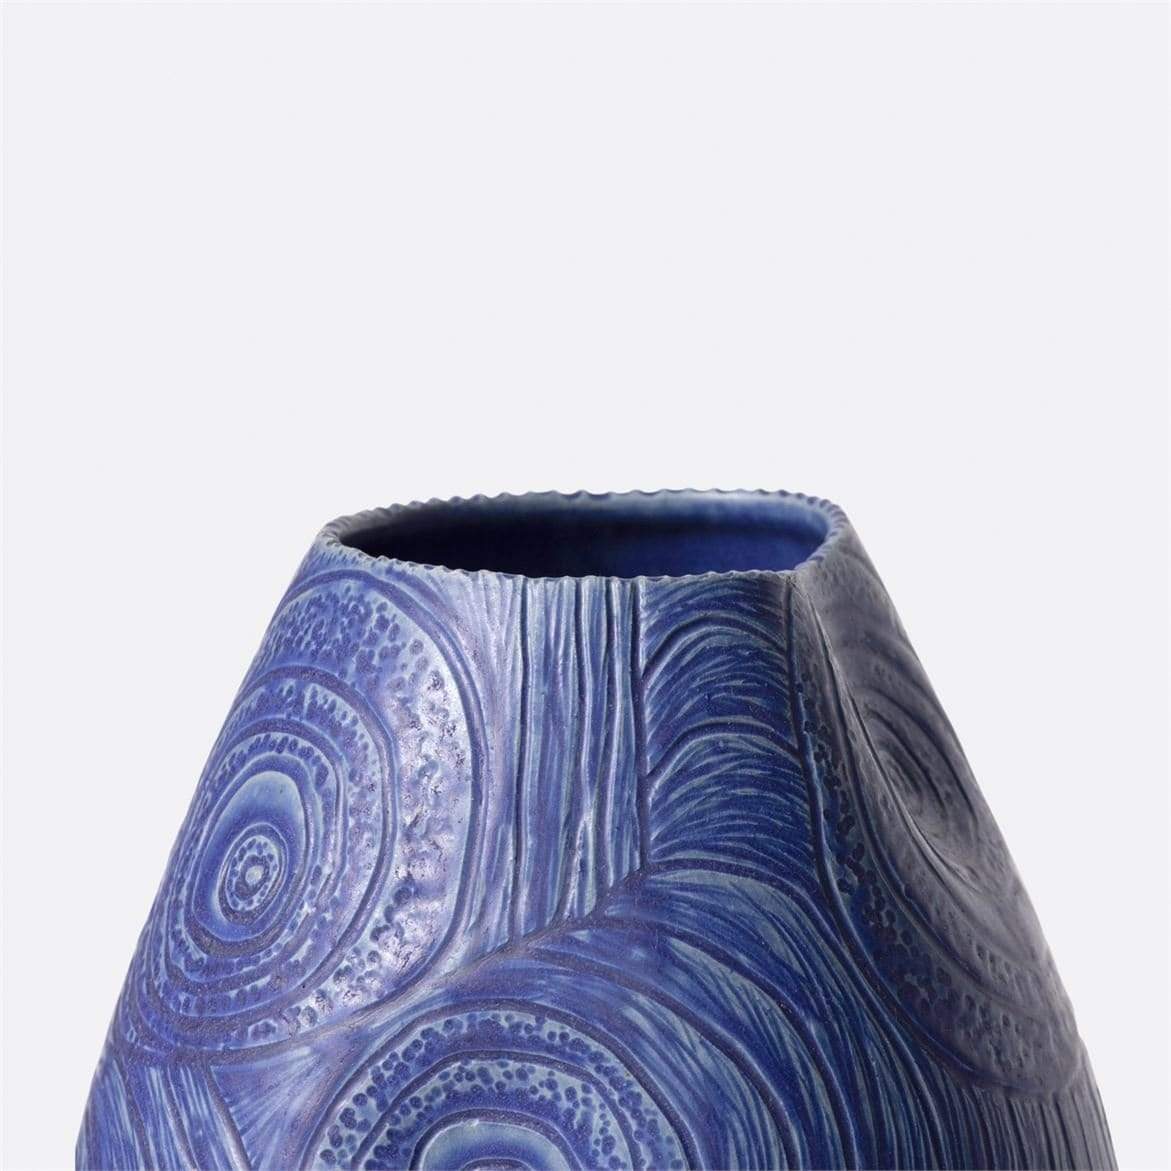 Made Goods Kenrick Vase Decor made-goods-OBJKENRICBL